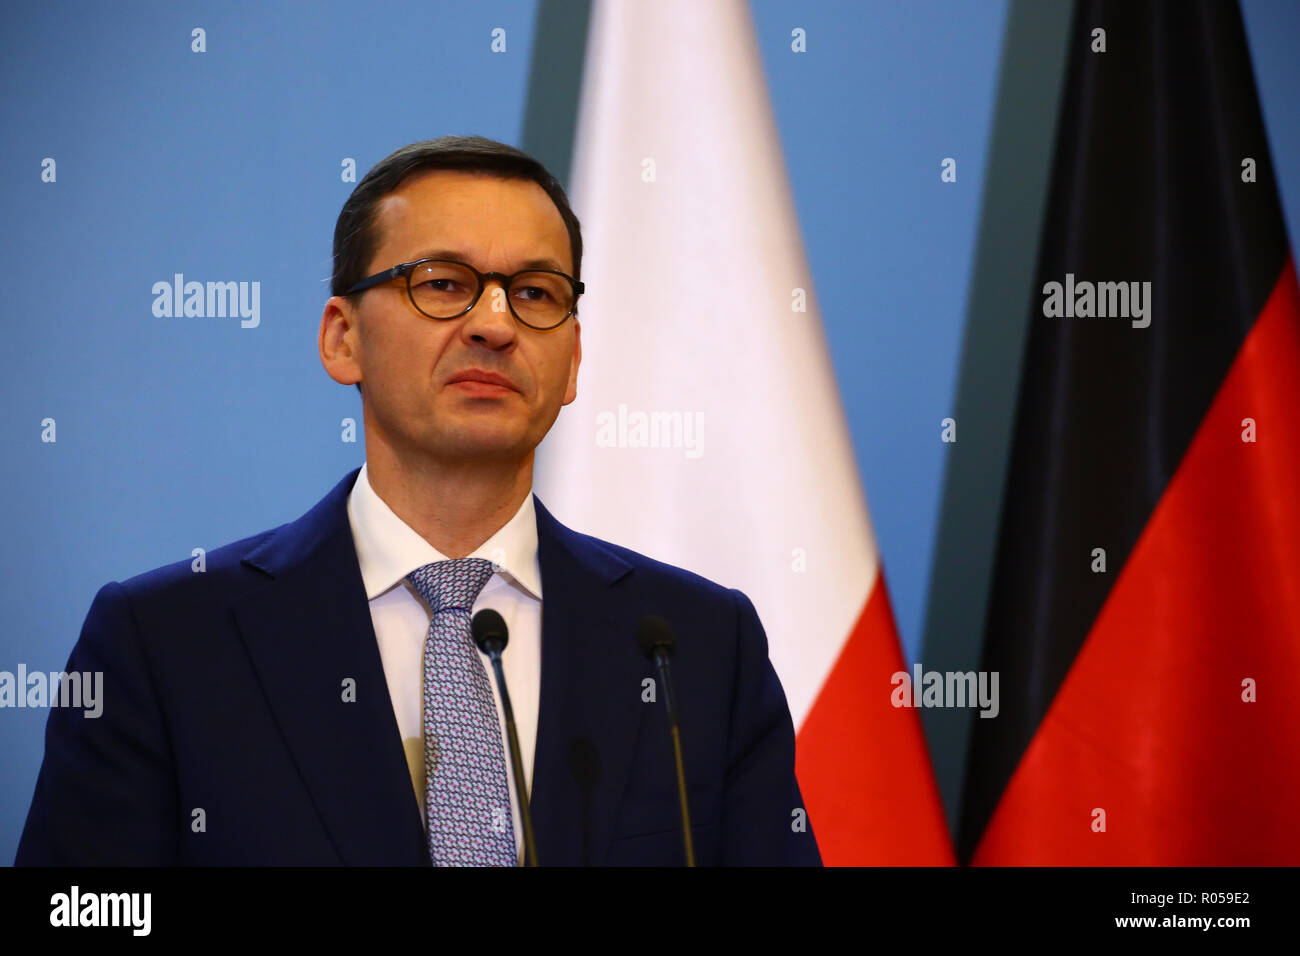 Varsovie, Pologne, 2 novembre 2018 : Premier Ministre Mateusz Morawiecki a tenu une conférence de presse conjointe avec la Chancelière Merkel après consultations gouvernementales germano-polonaise. ©Jake Ratz/Alamy Live News Banque D'Images